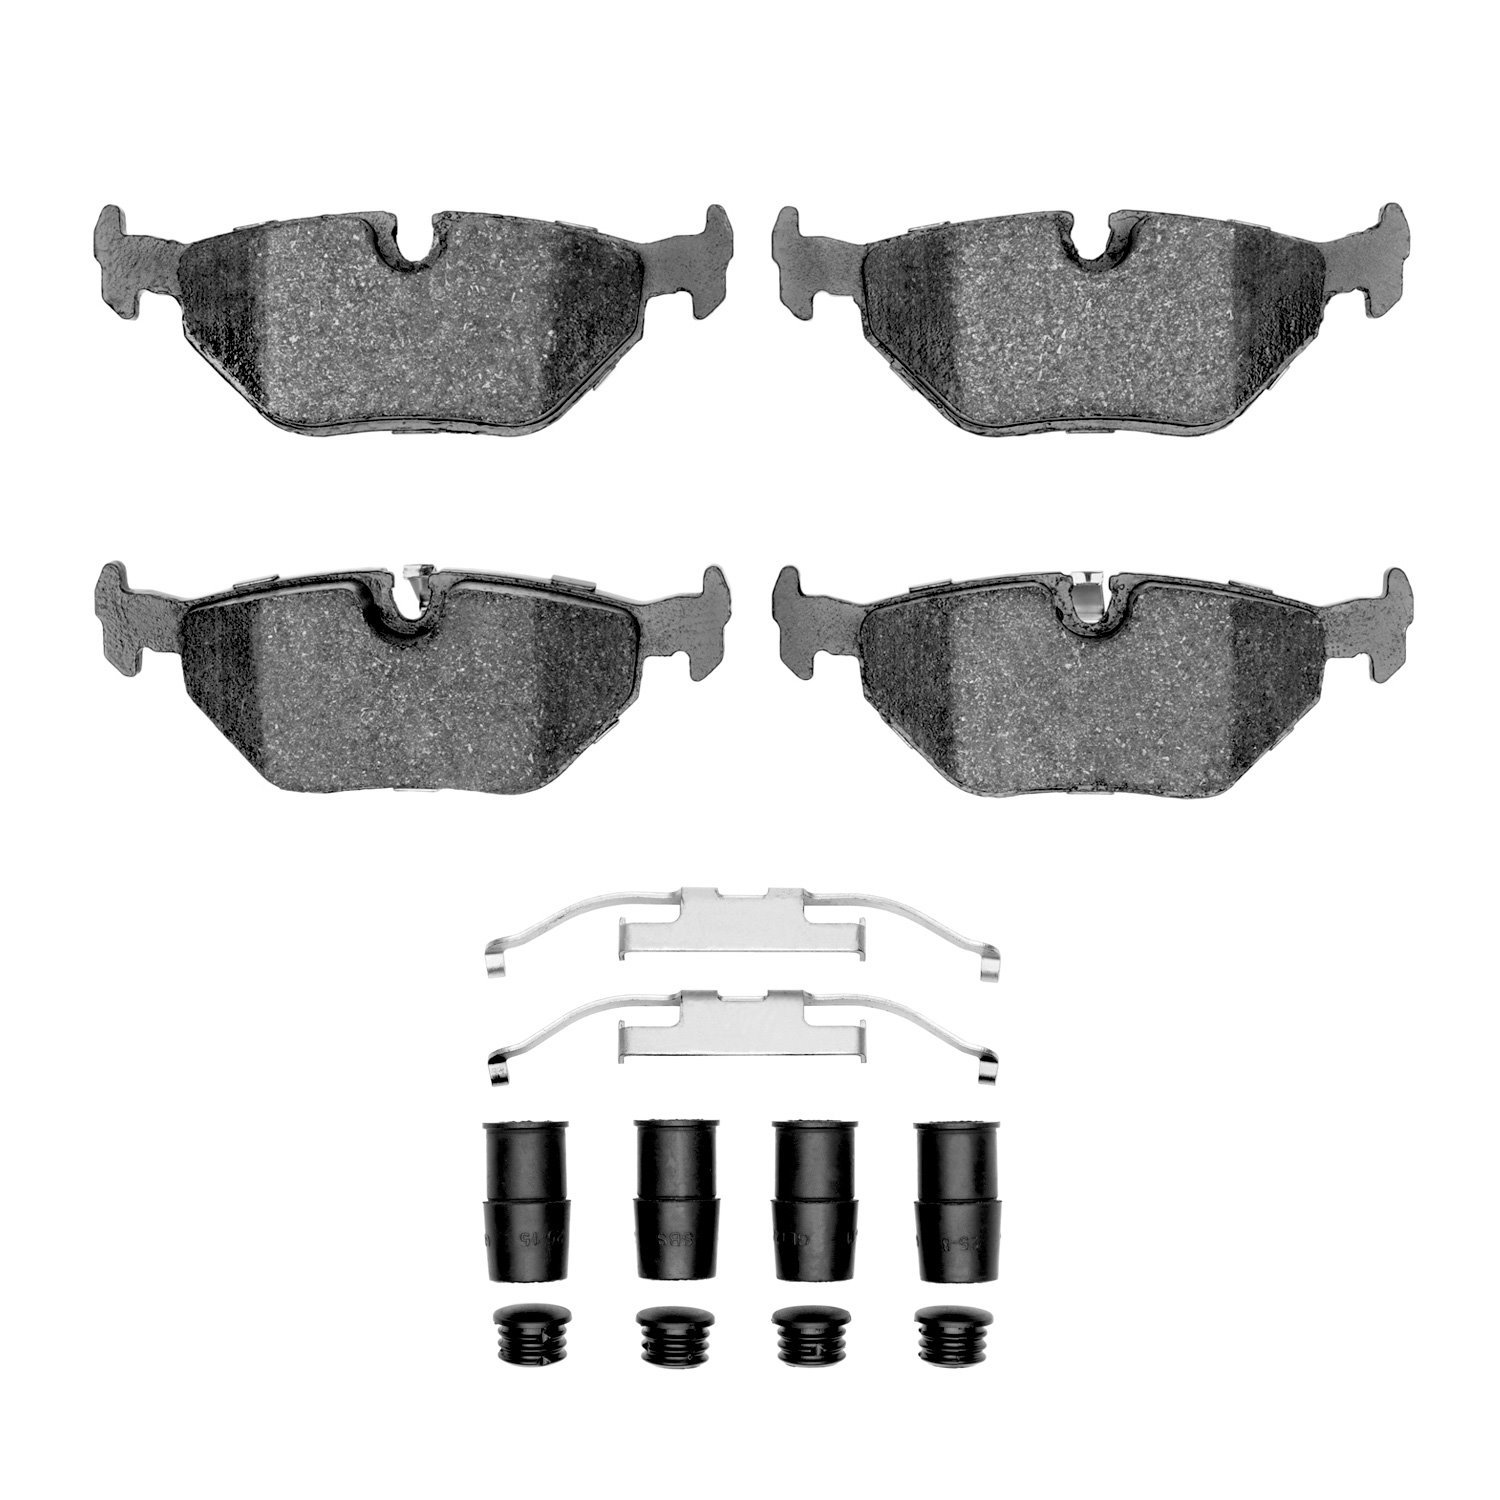 1600-0692-01 5000 Euro Ceramic Brake Pads & Hardware Kit, 1991-2008 BMW, Position: Rear